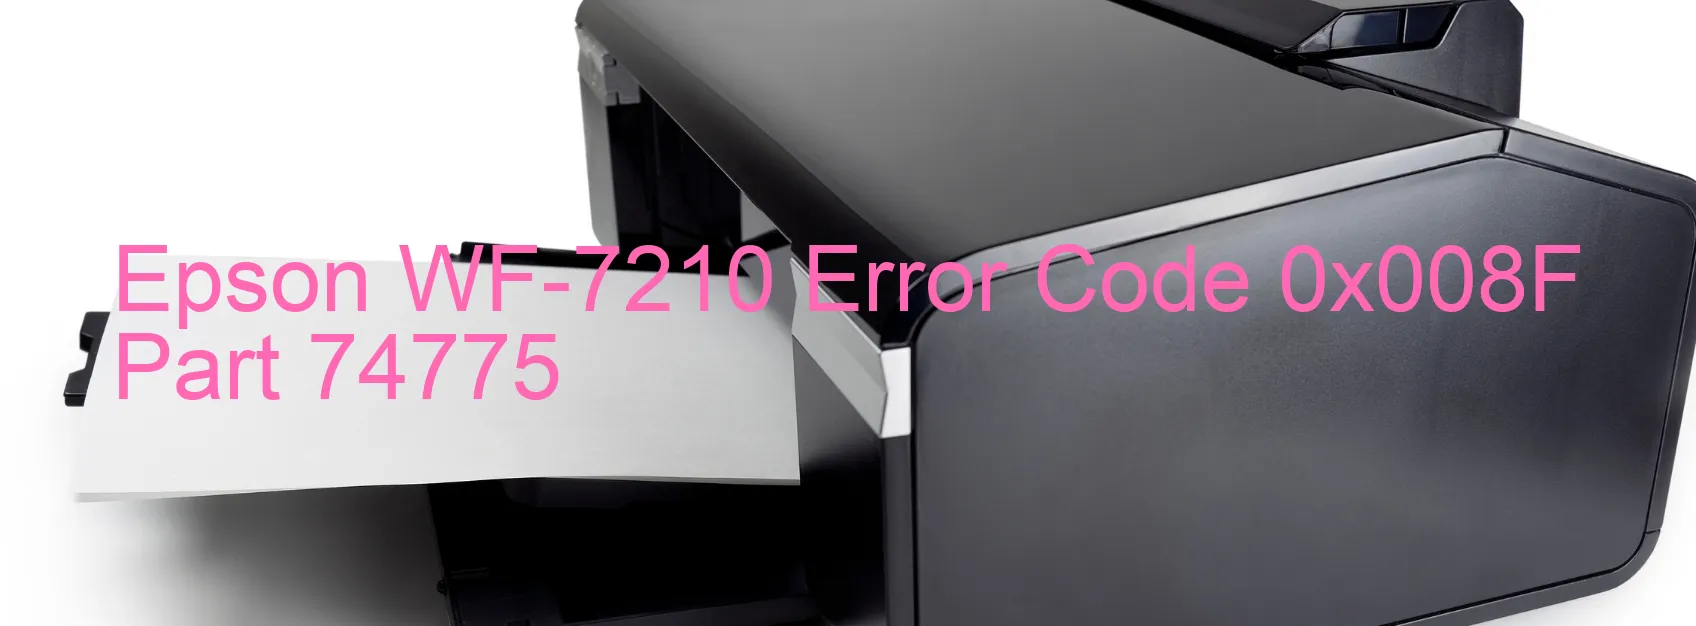 Epson WF-7210 Error Code 0x008F Part 74775